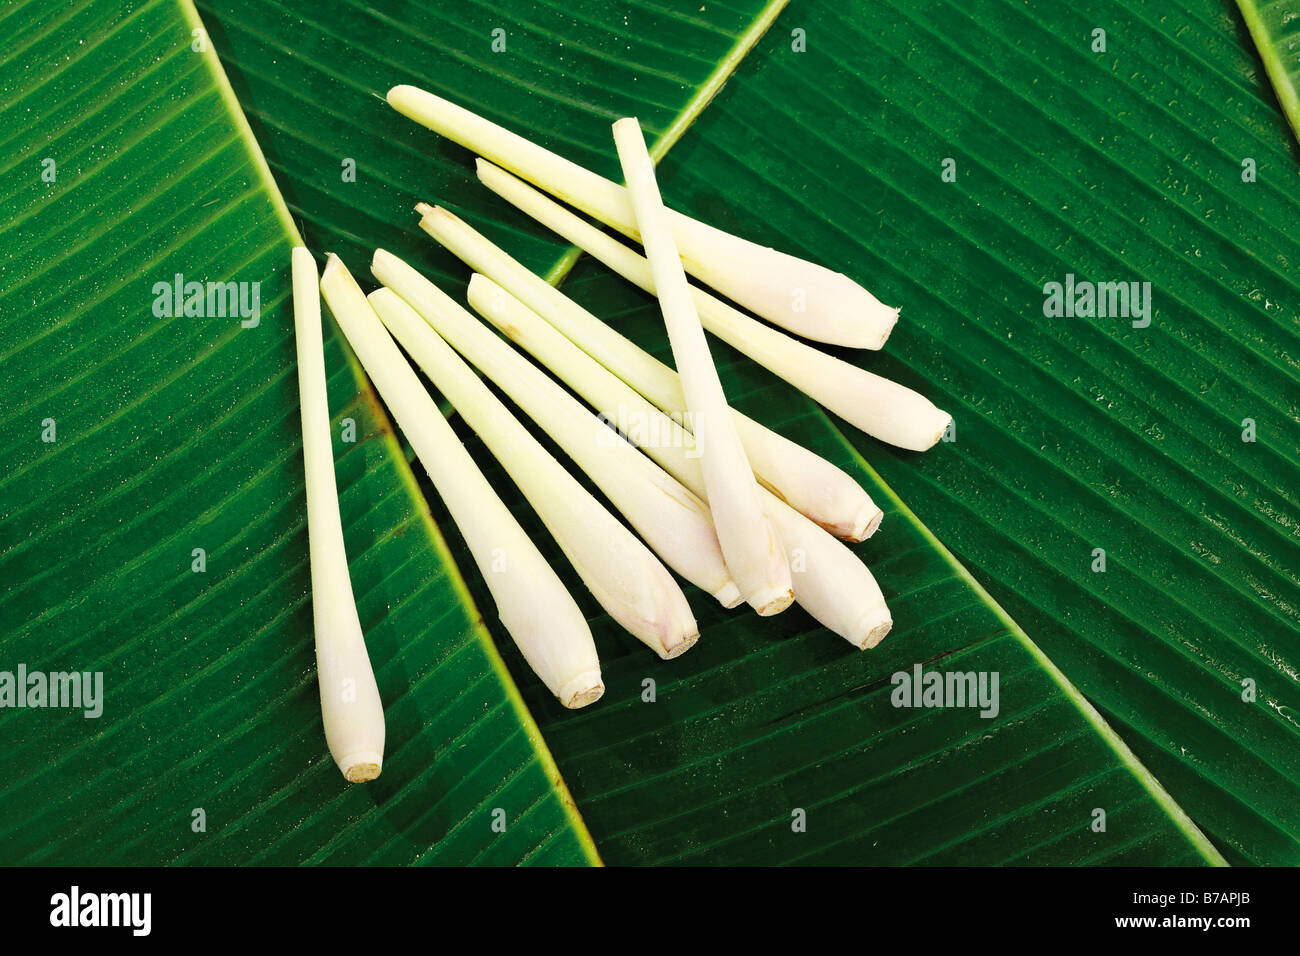 Lemongrass on banana leaves Stock Photo